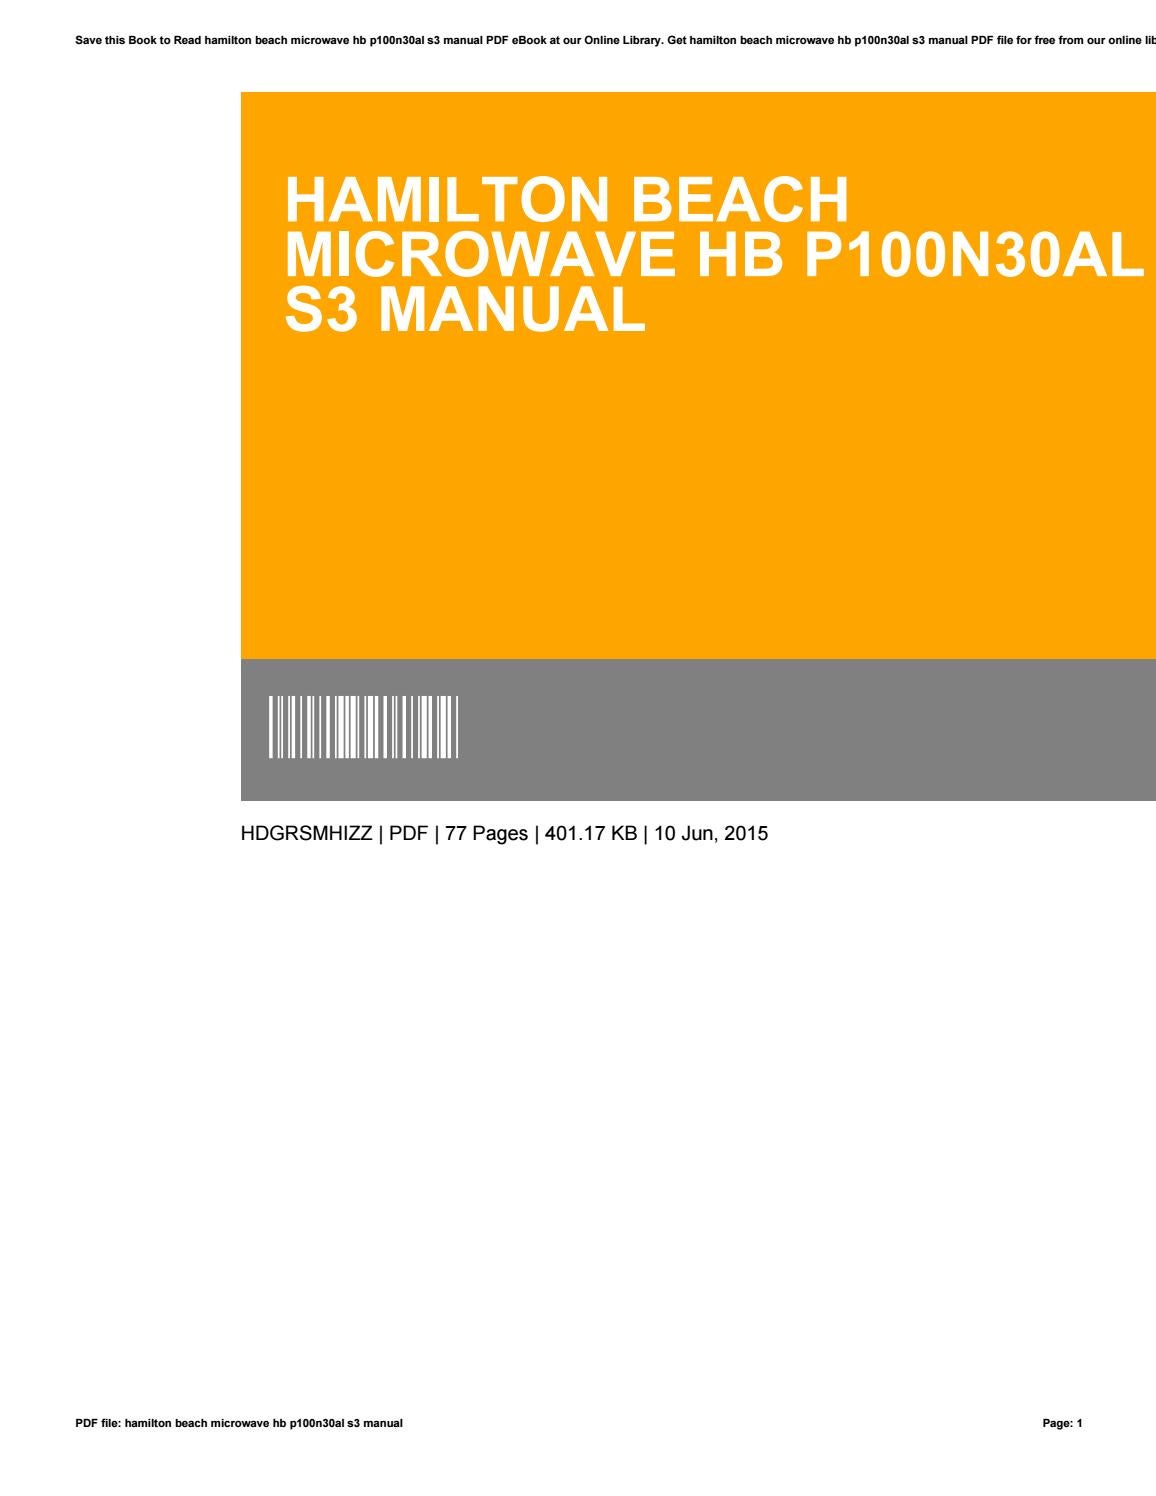 Hamilton beach hb p100n30al s3 manual